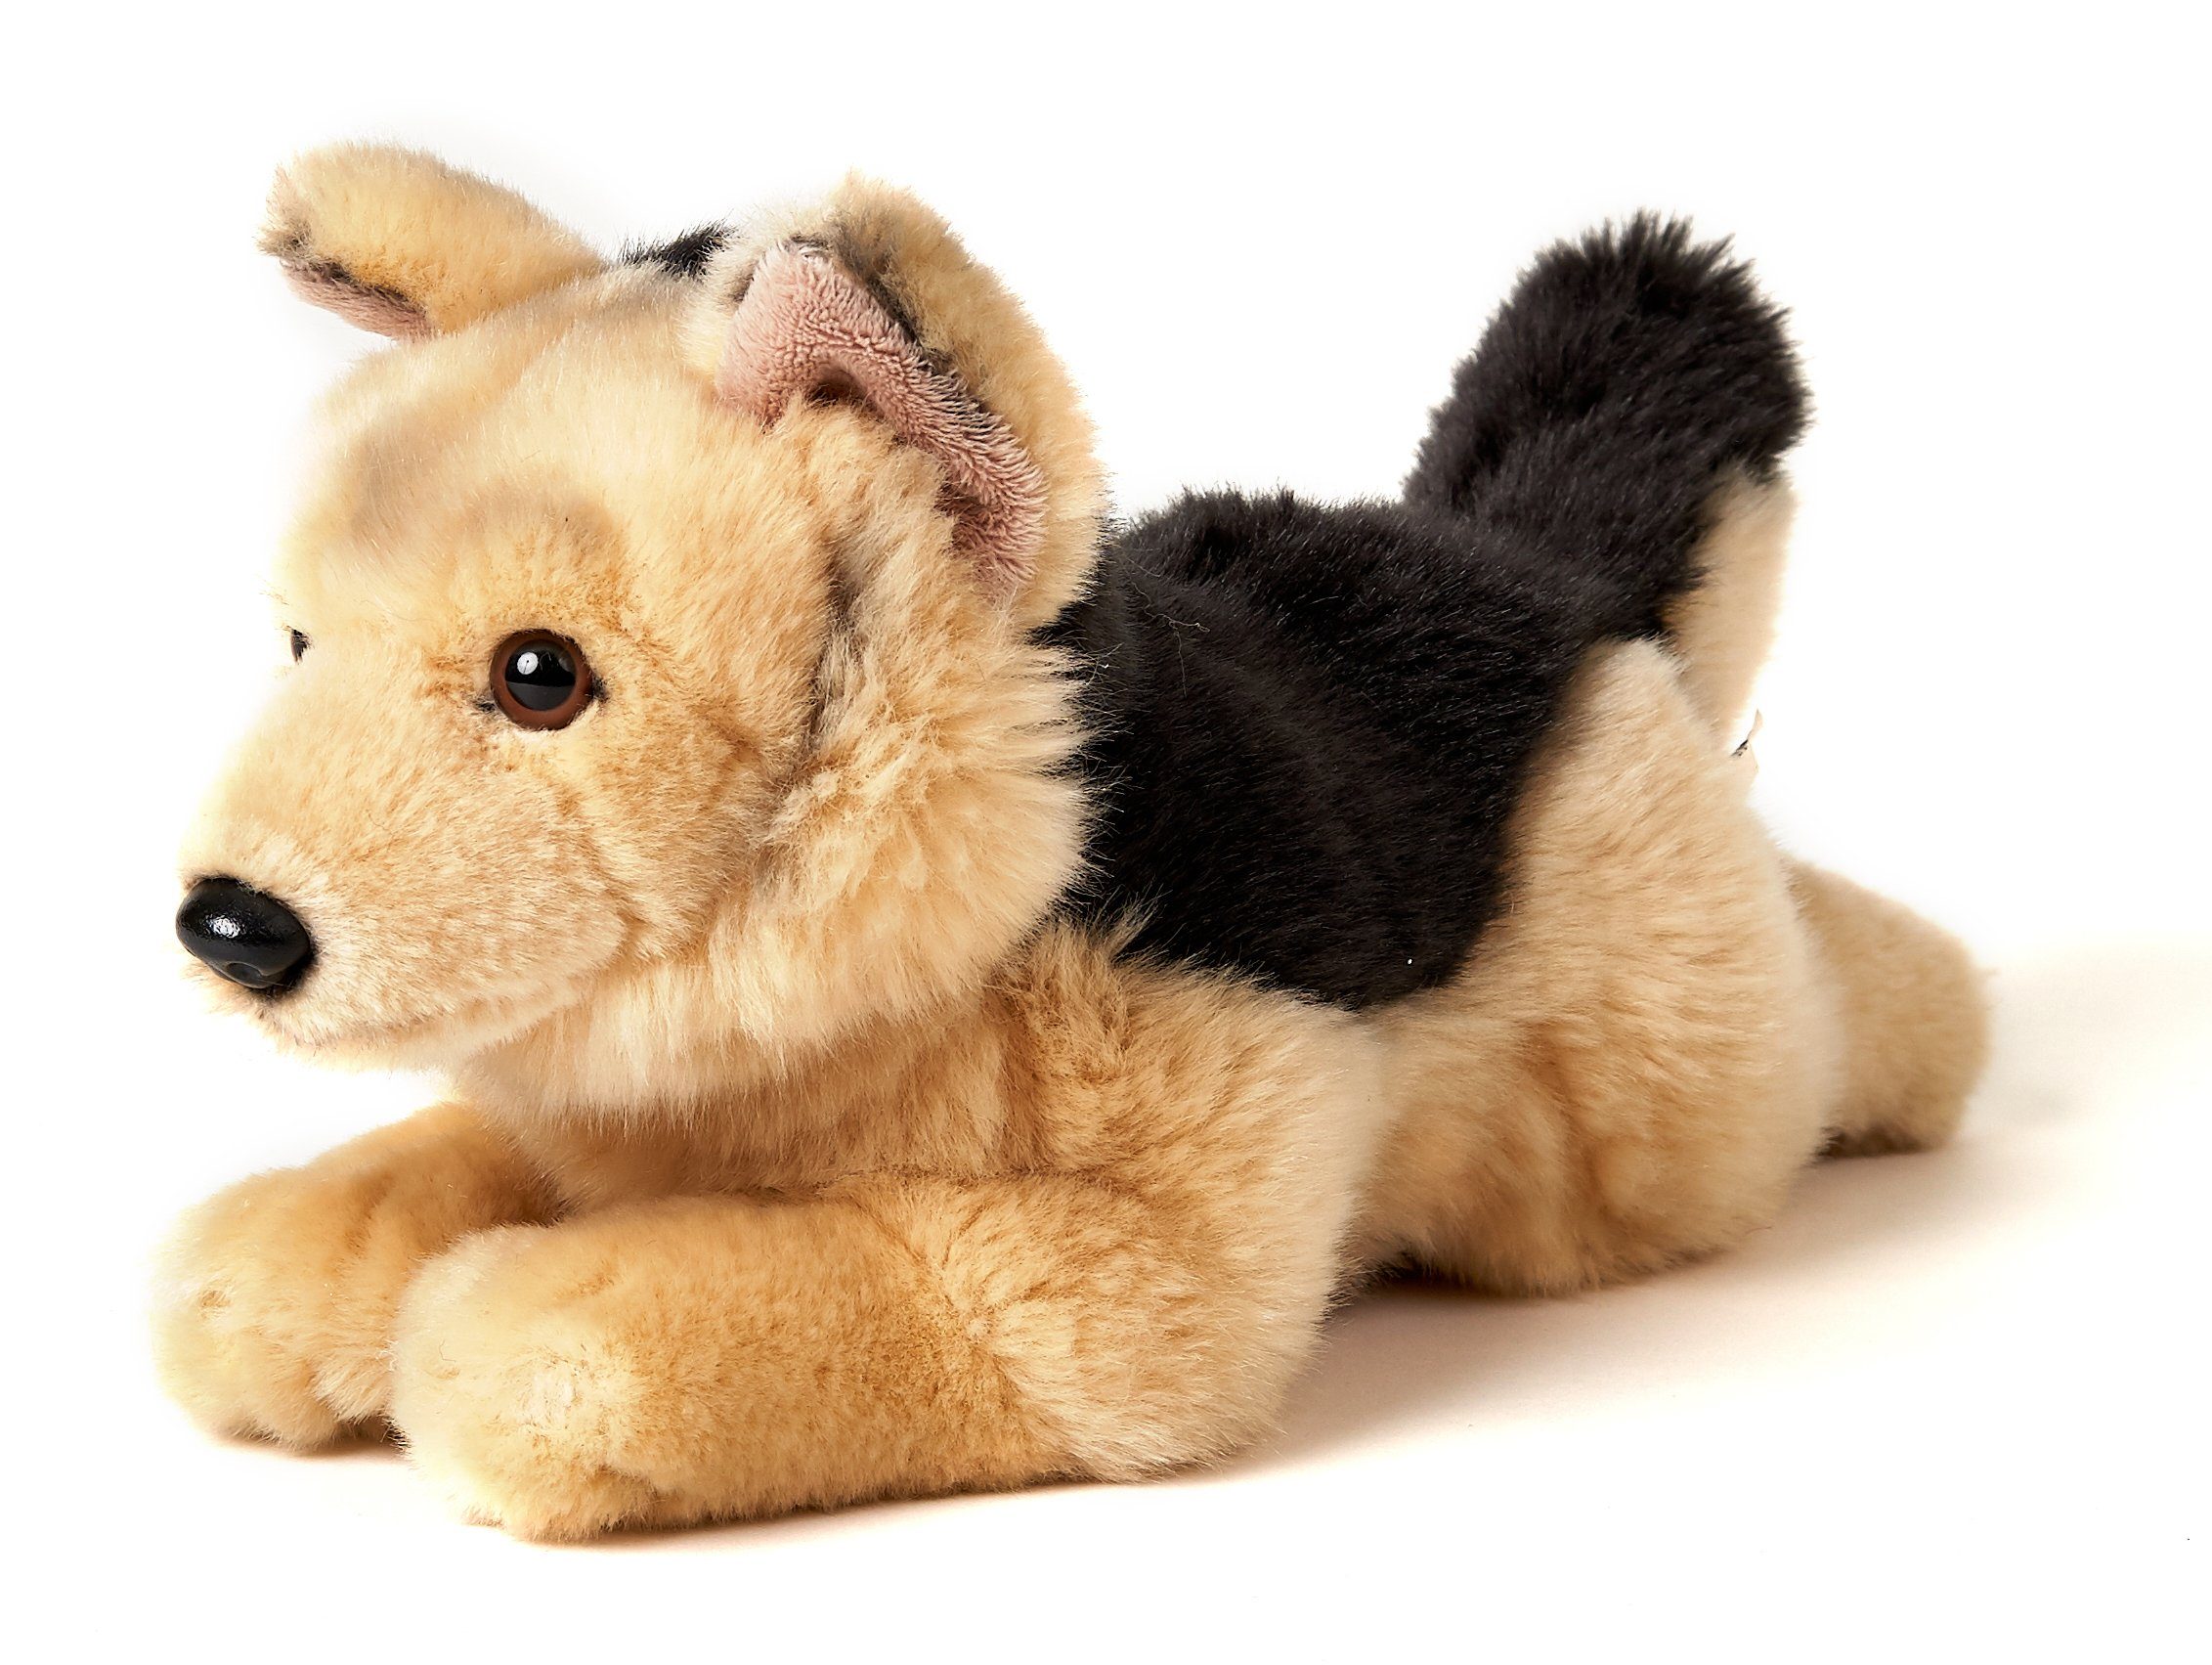 Uni-Toys Kuscheltier Deutscher Schäferhund, liegend - Länge 32 cm - Plüsch-Hund, Plüschtier, zu 100 % recyceltes Füllmaterial